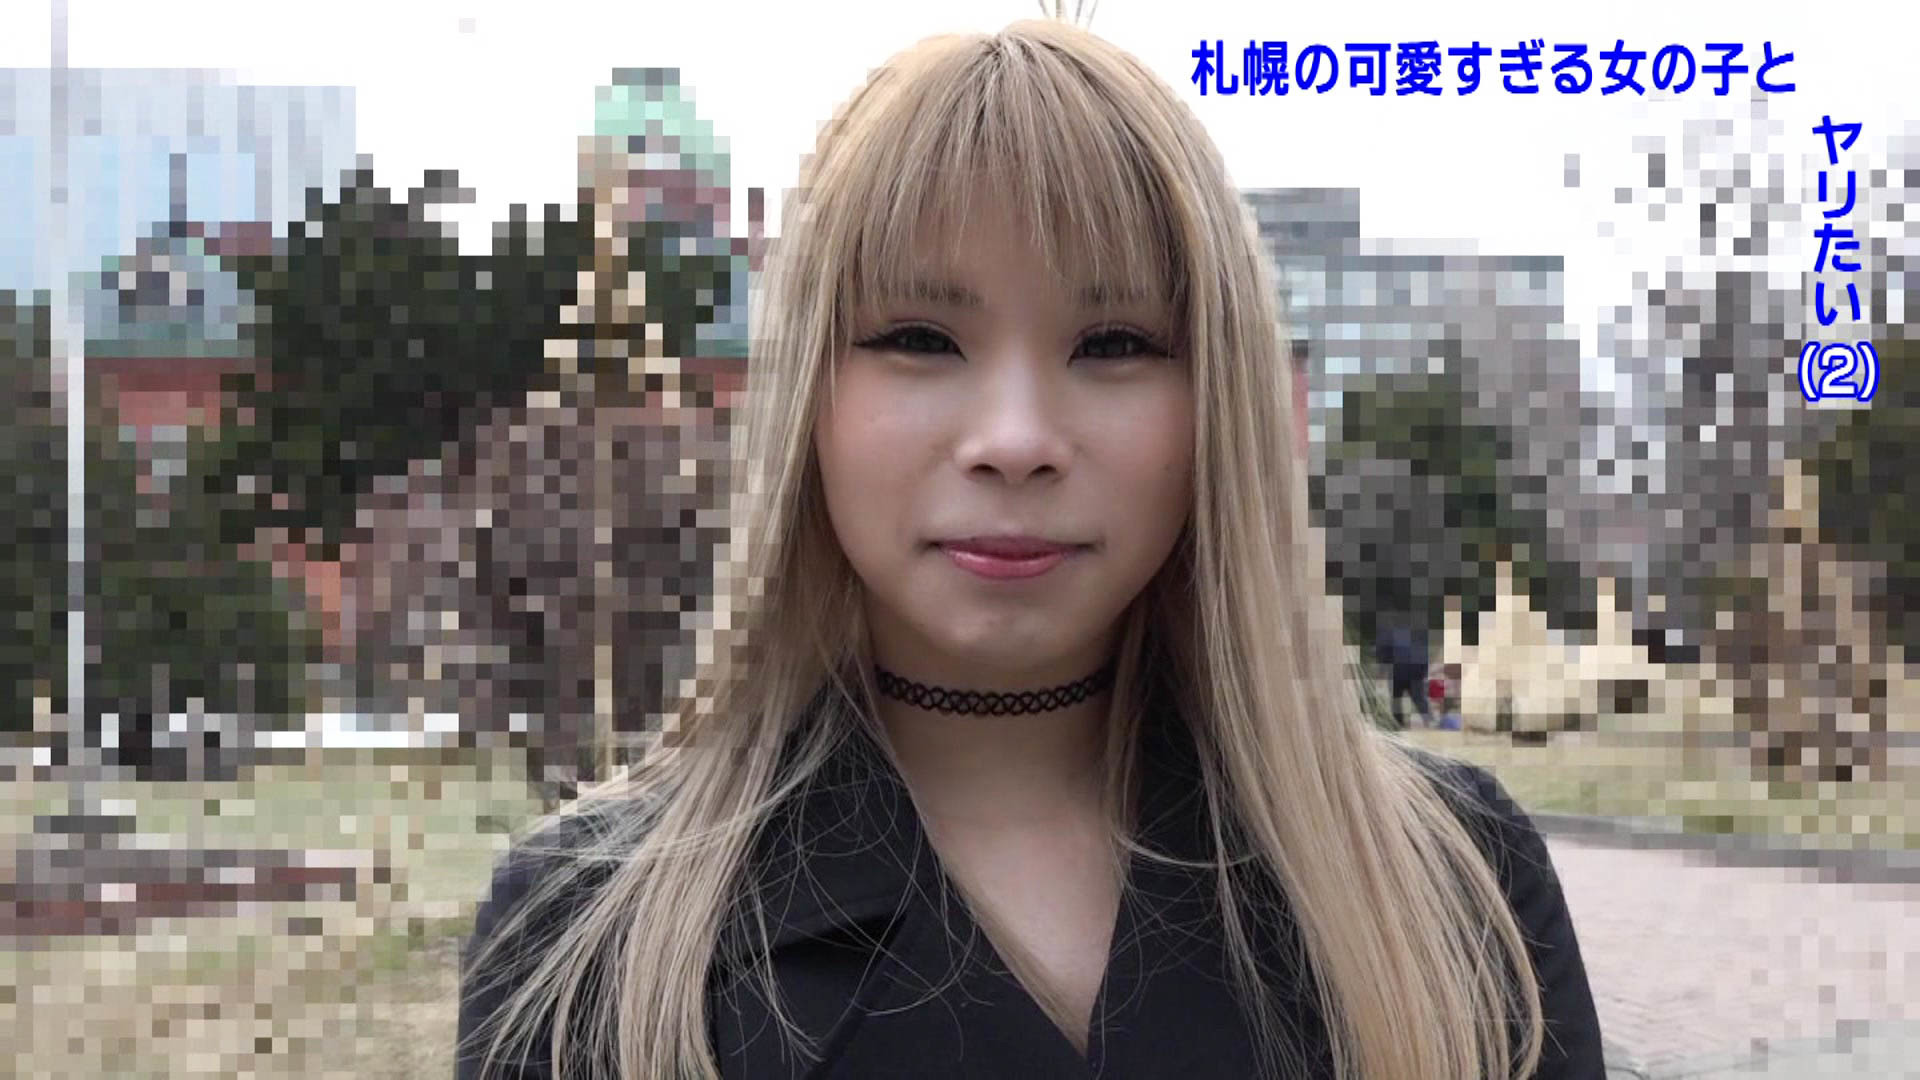 札幌の街で見かけた北海道弁が可愛すぎる女の子とどうしてもヤリたい（2） 画像14